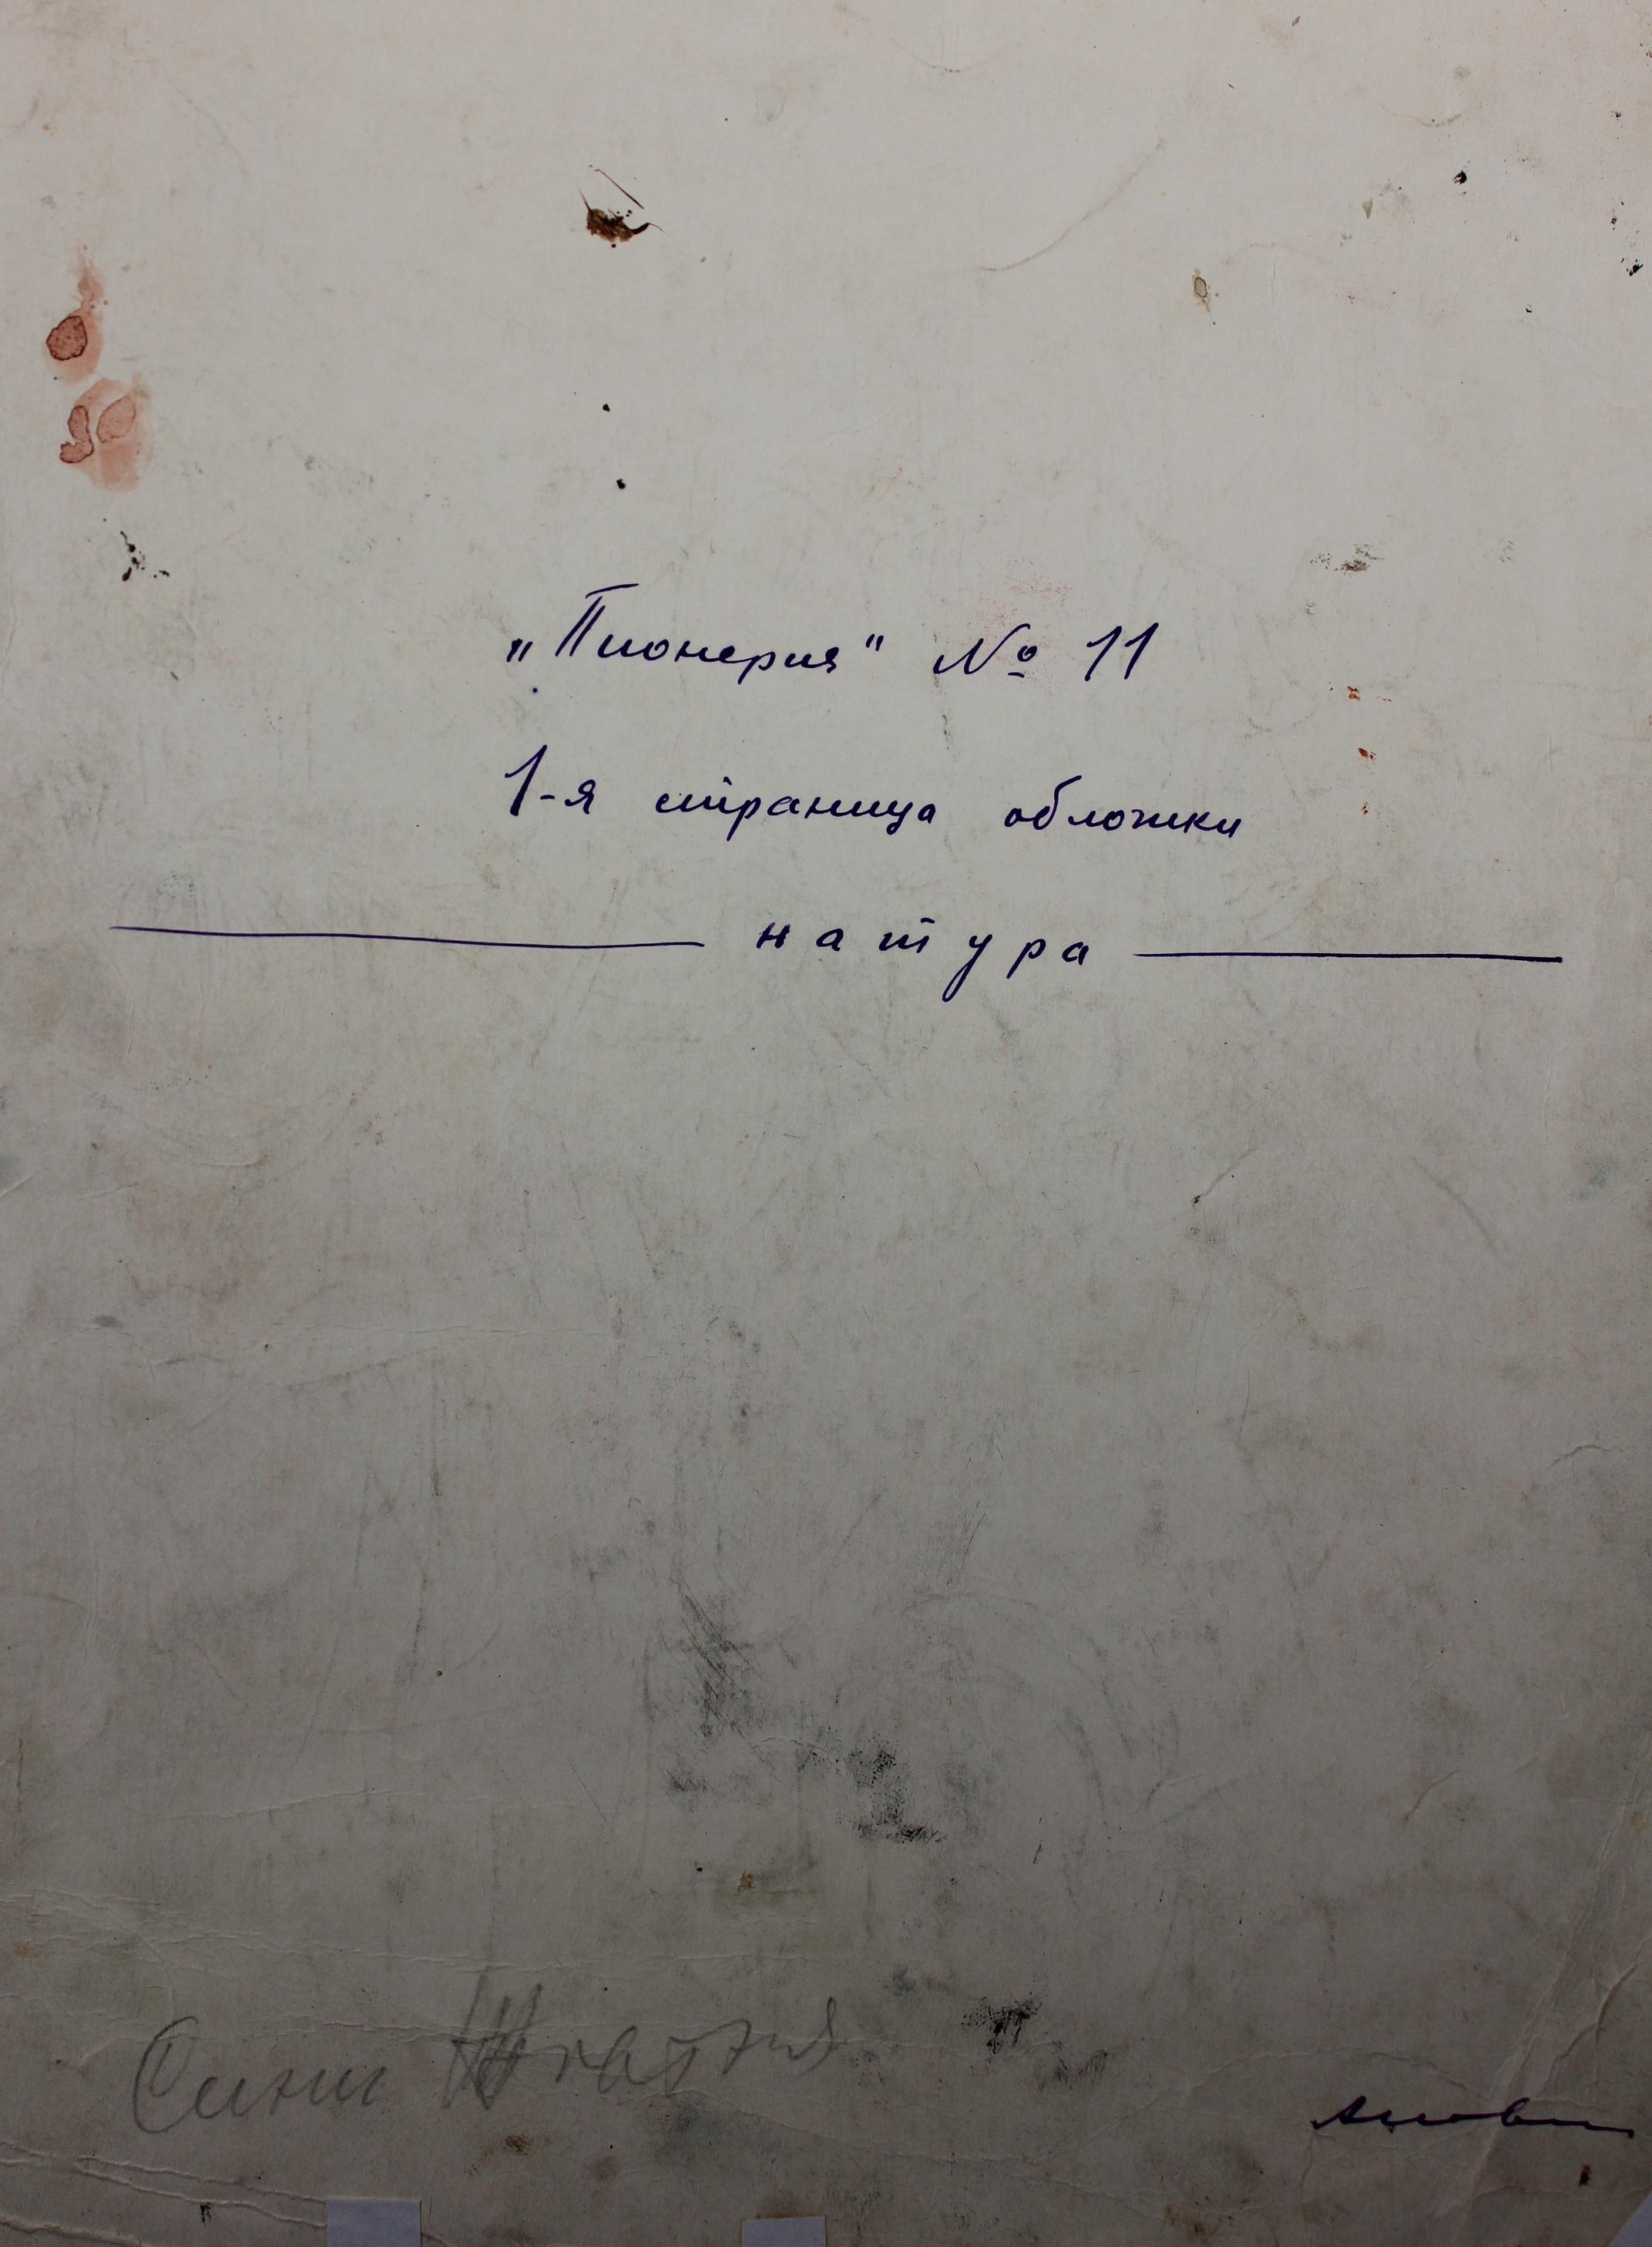 Журнал Пионерия № 11. Обложка 18-24 см., бумага, карандаш,тушь, пастель 1950-1960  - 1